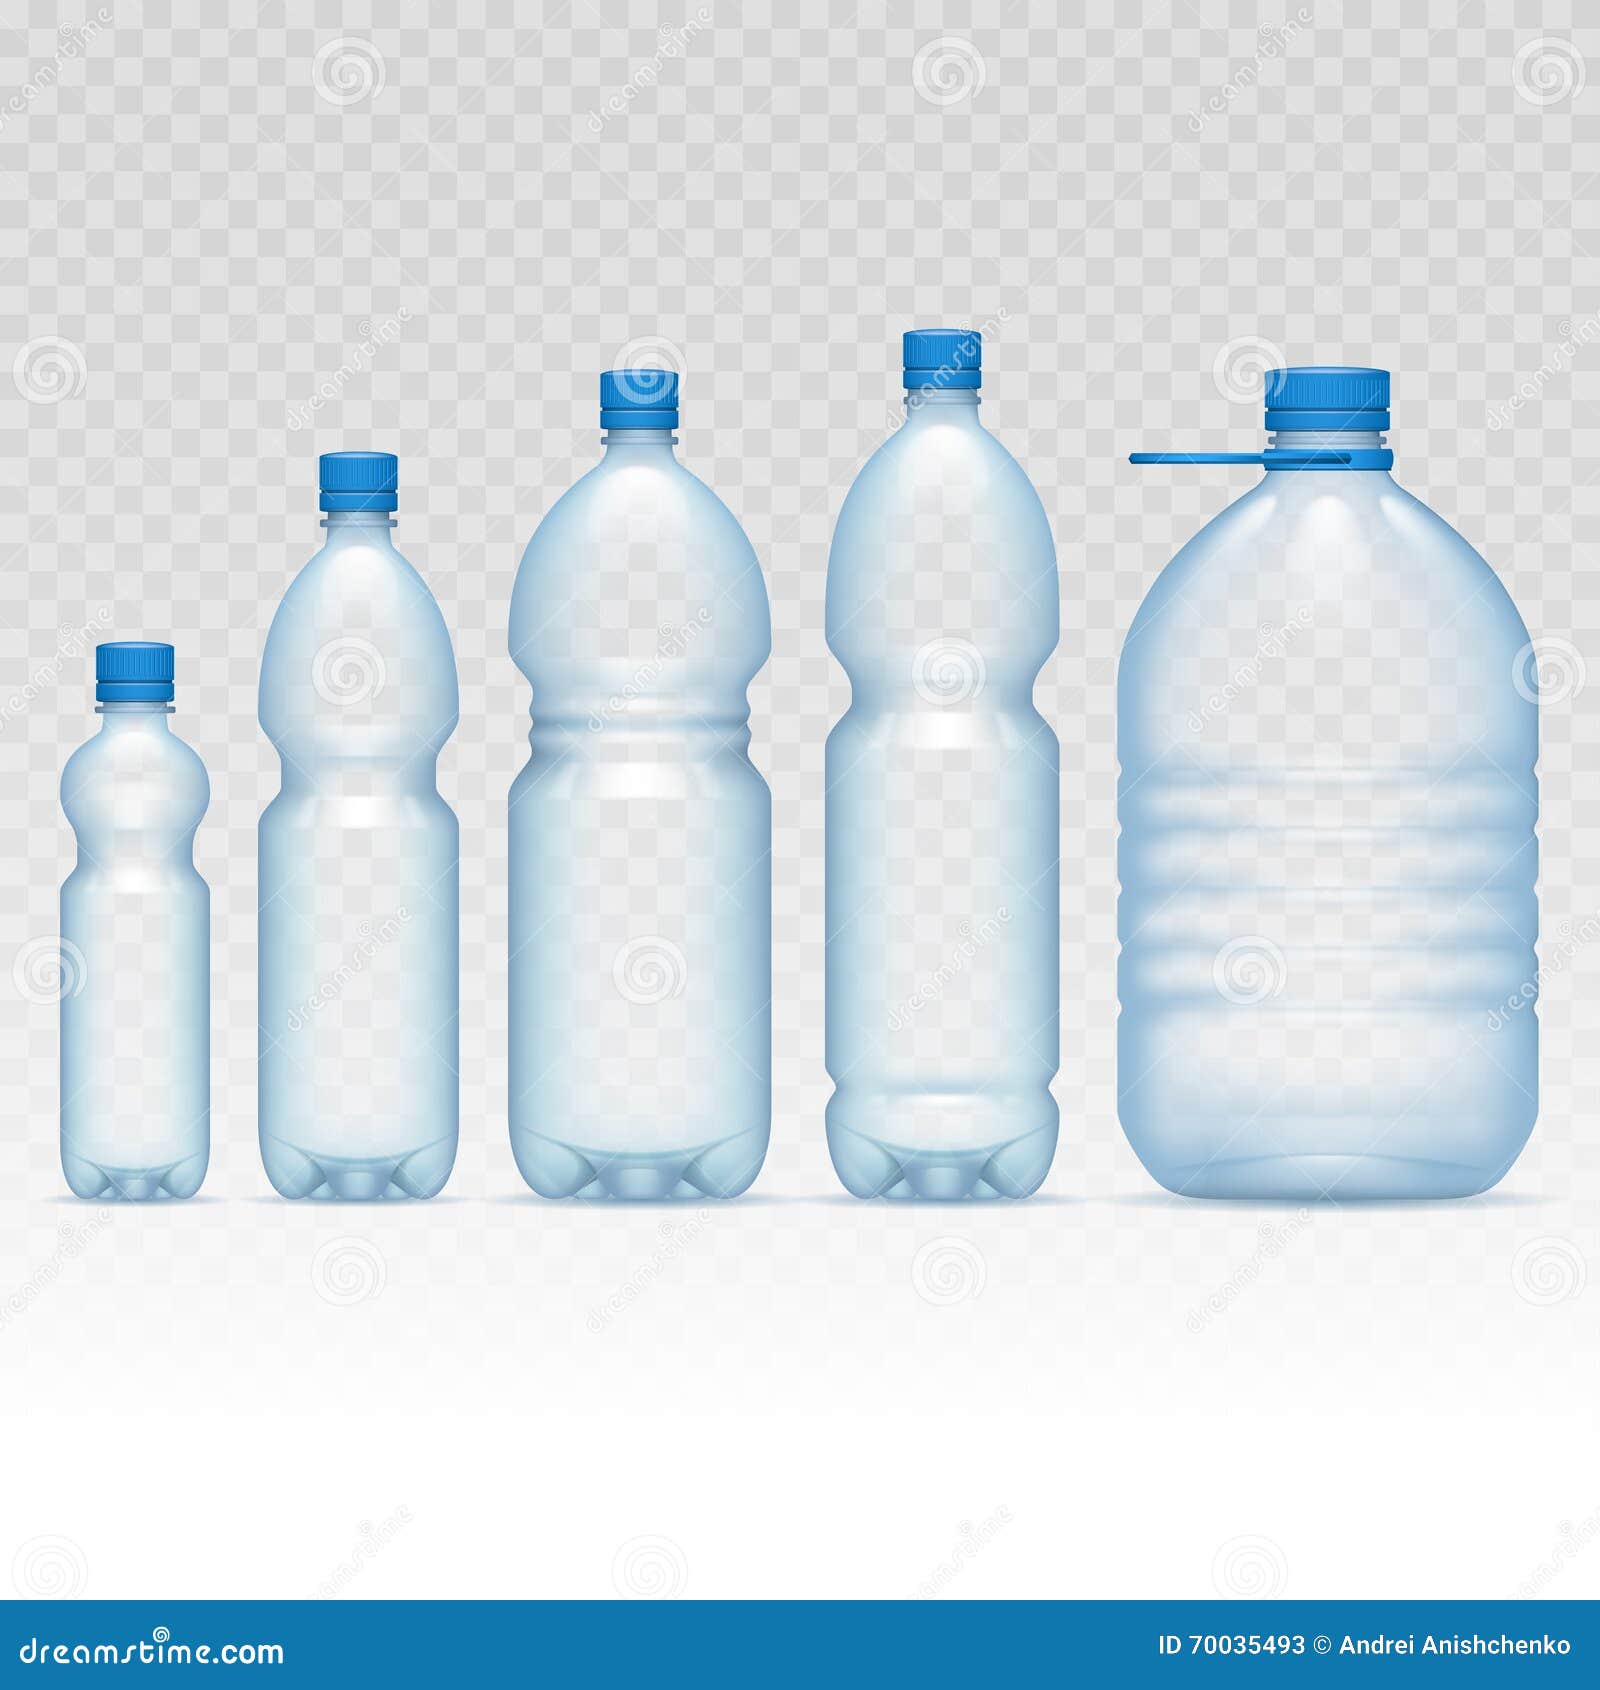 plastic bottles set